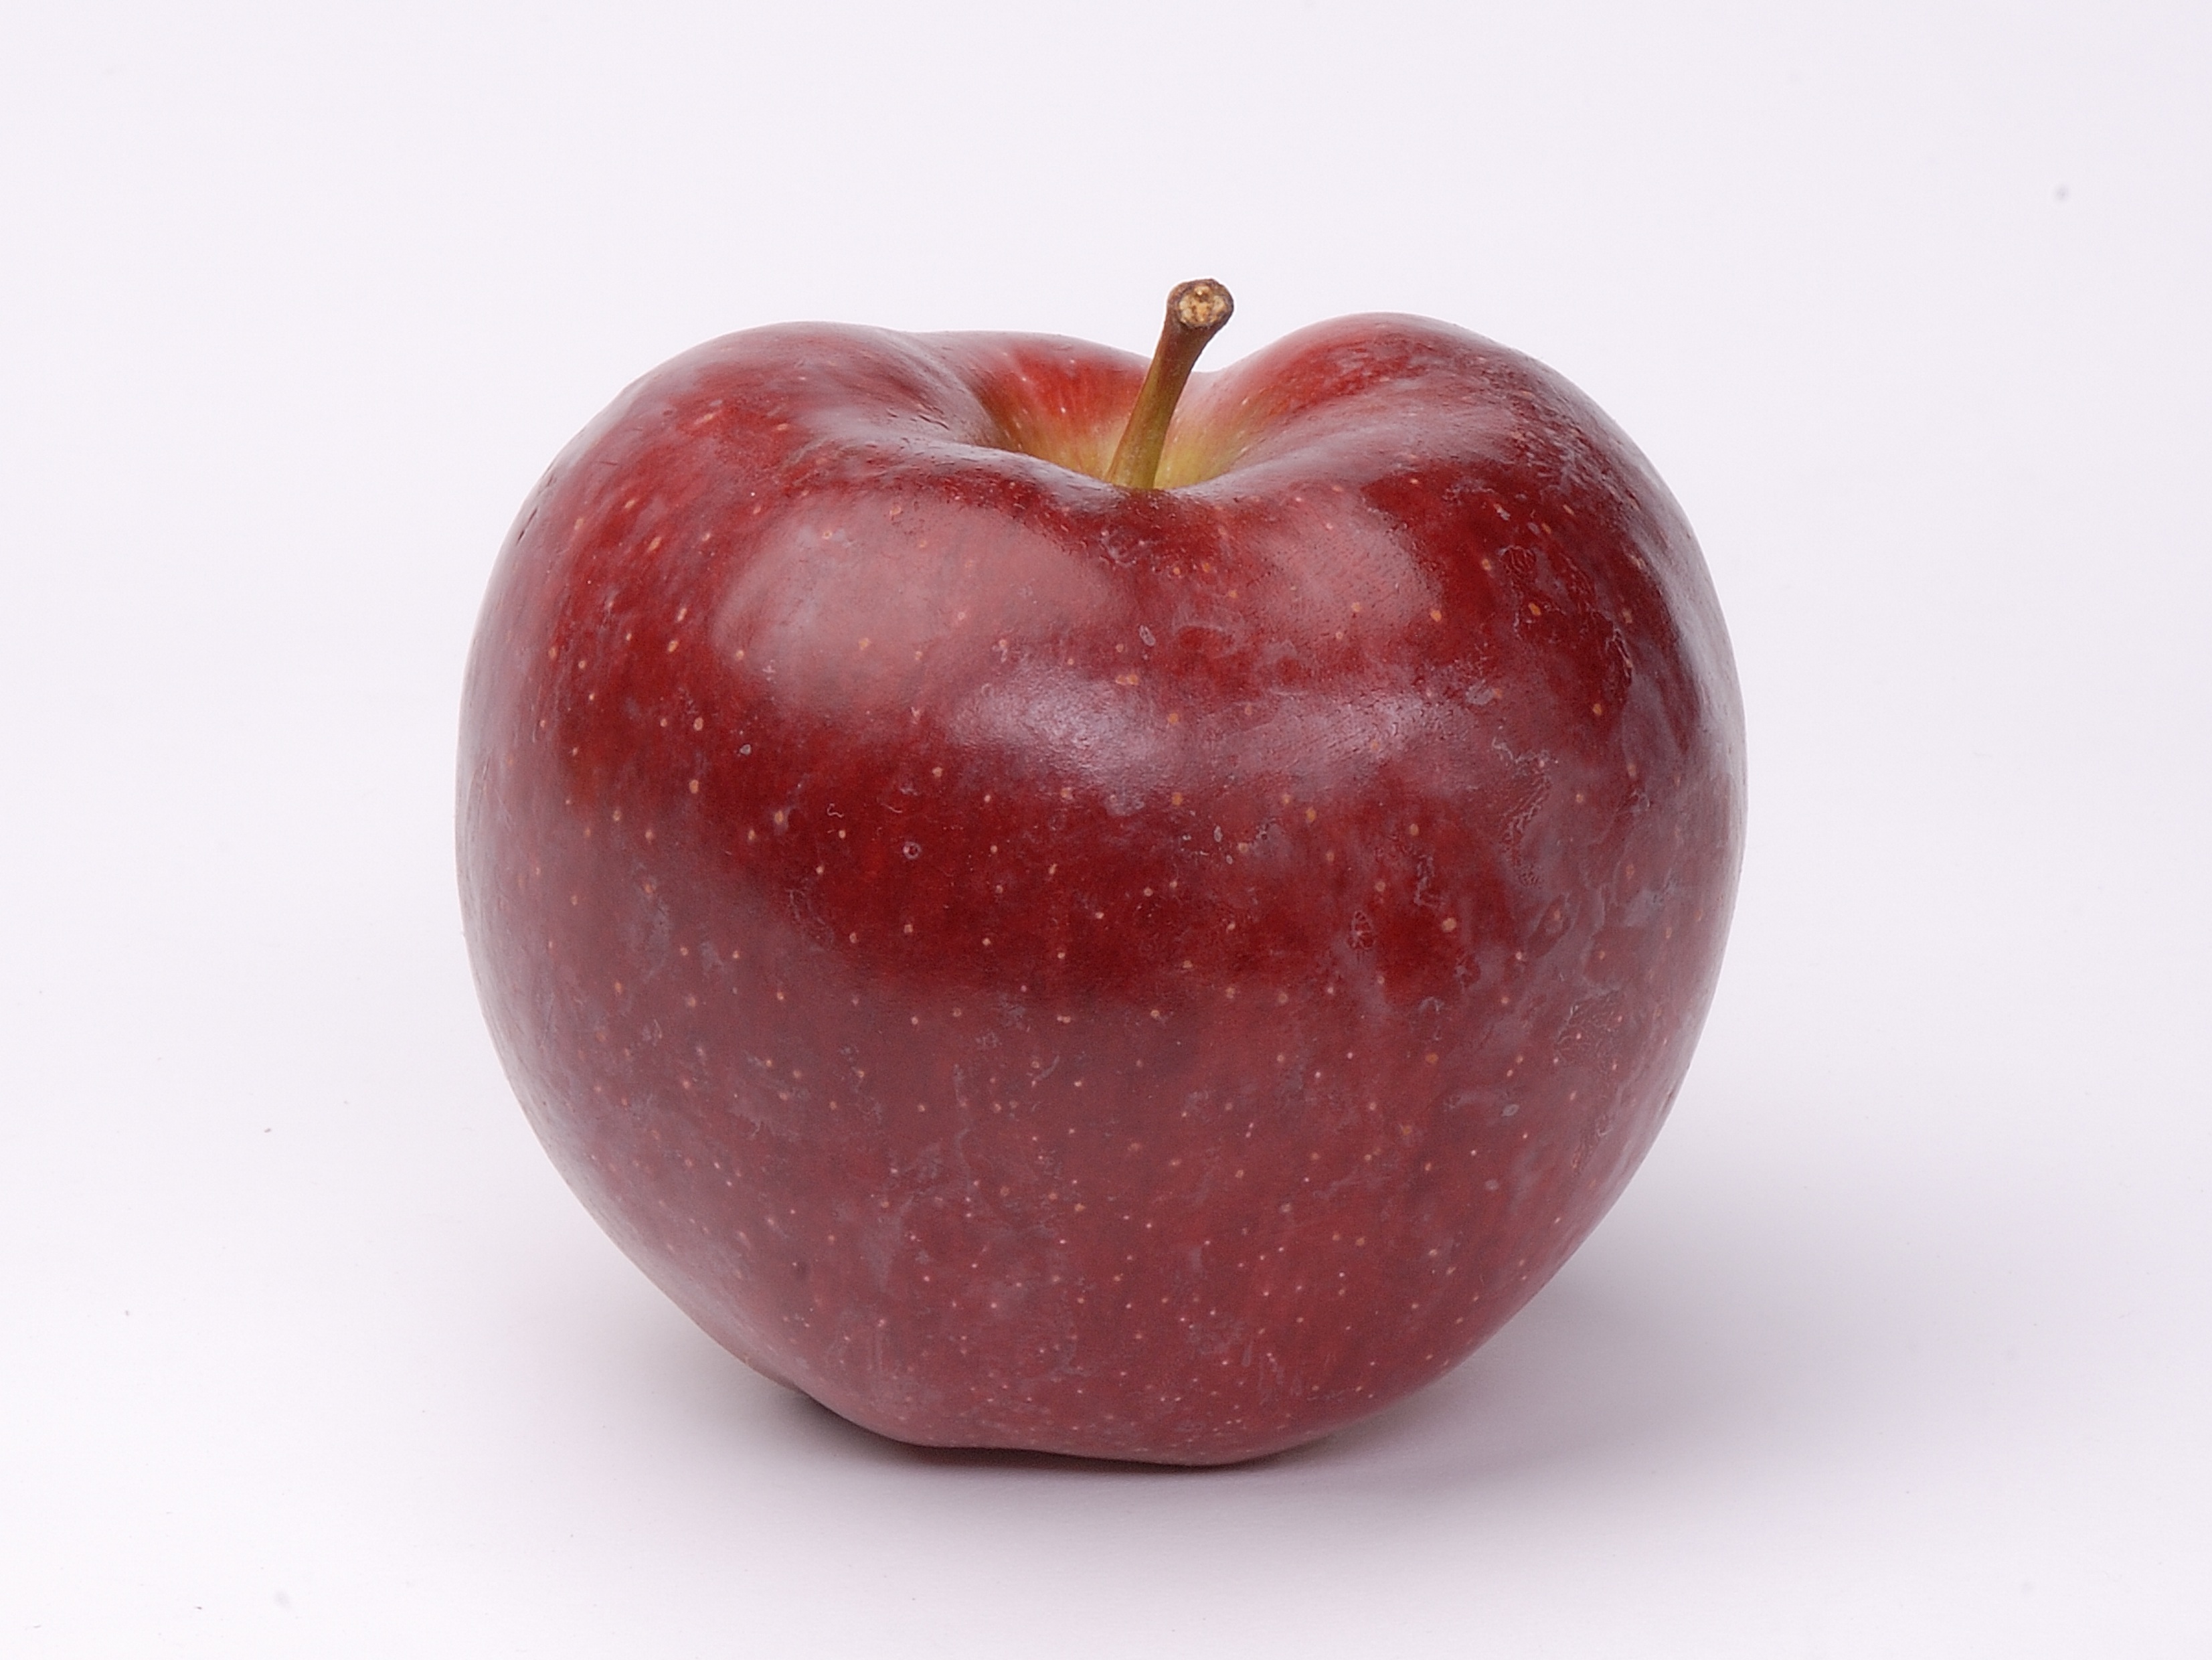 фотография красного яблока